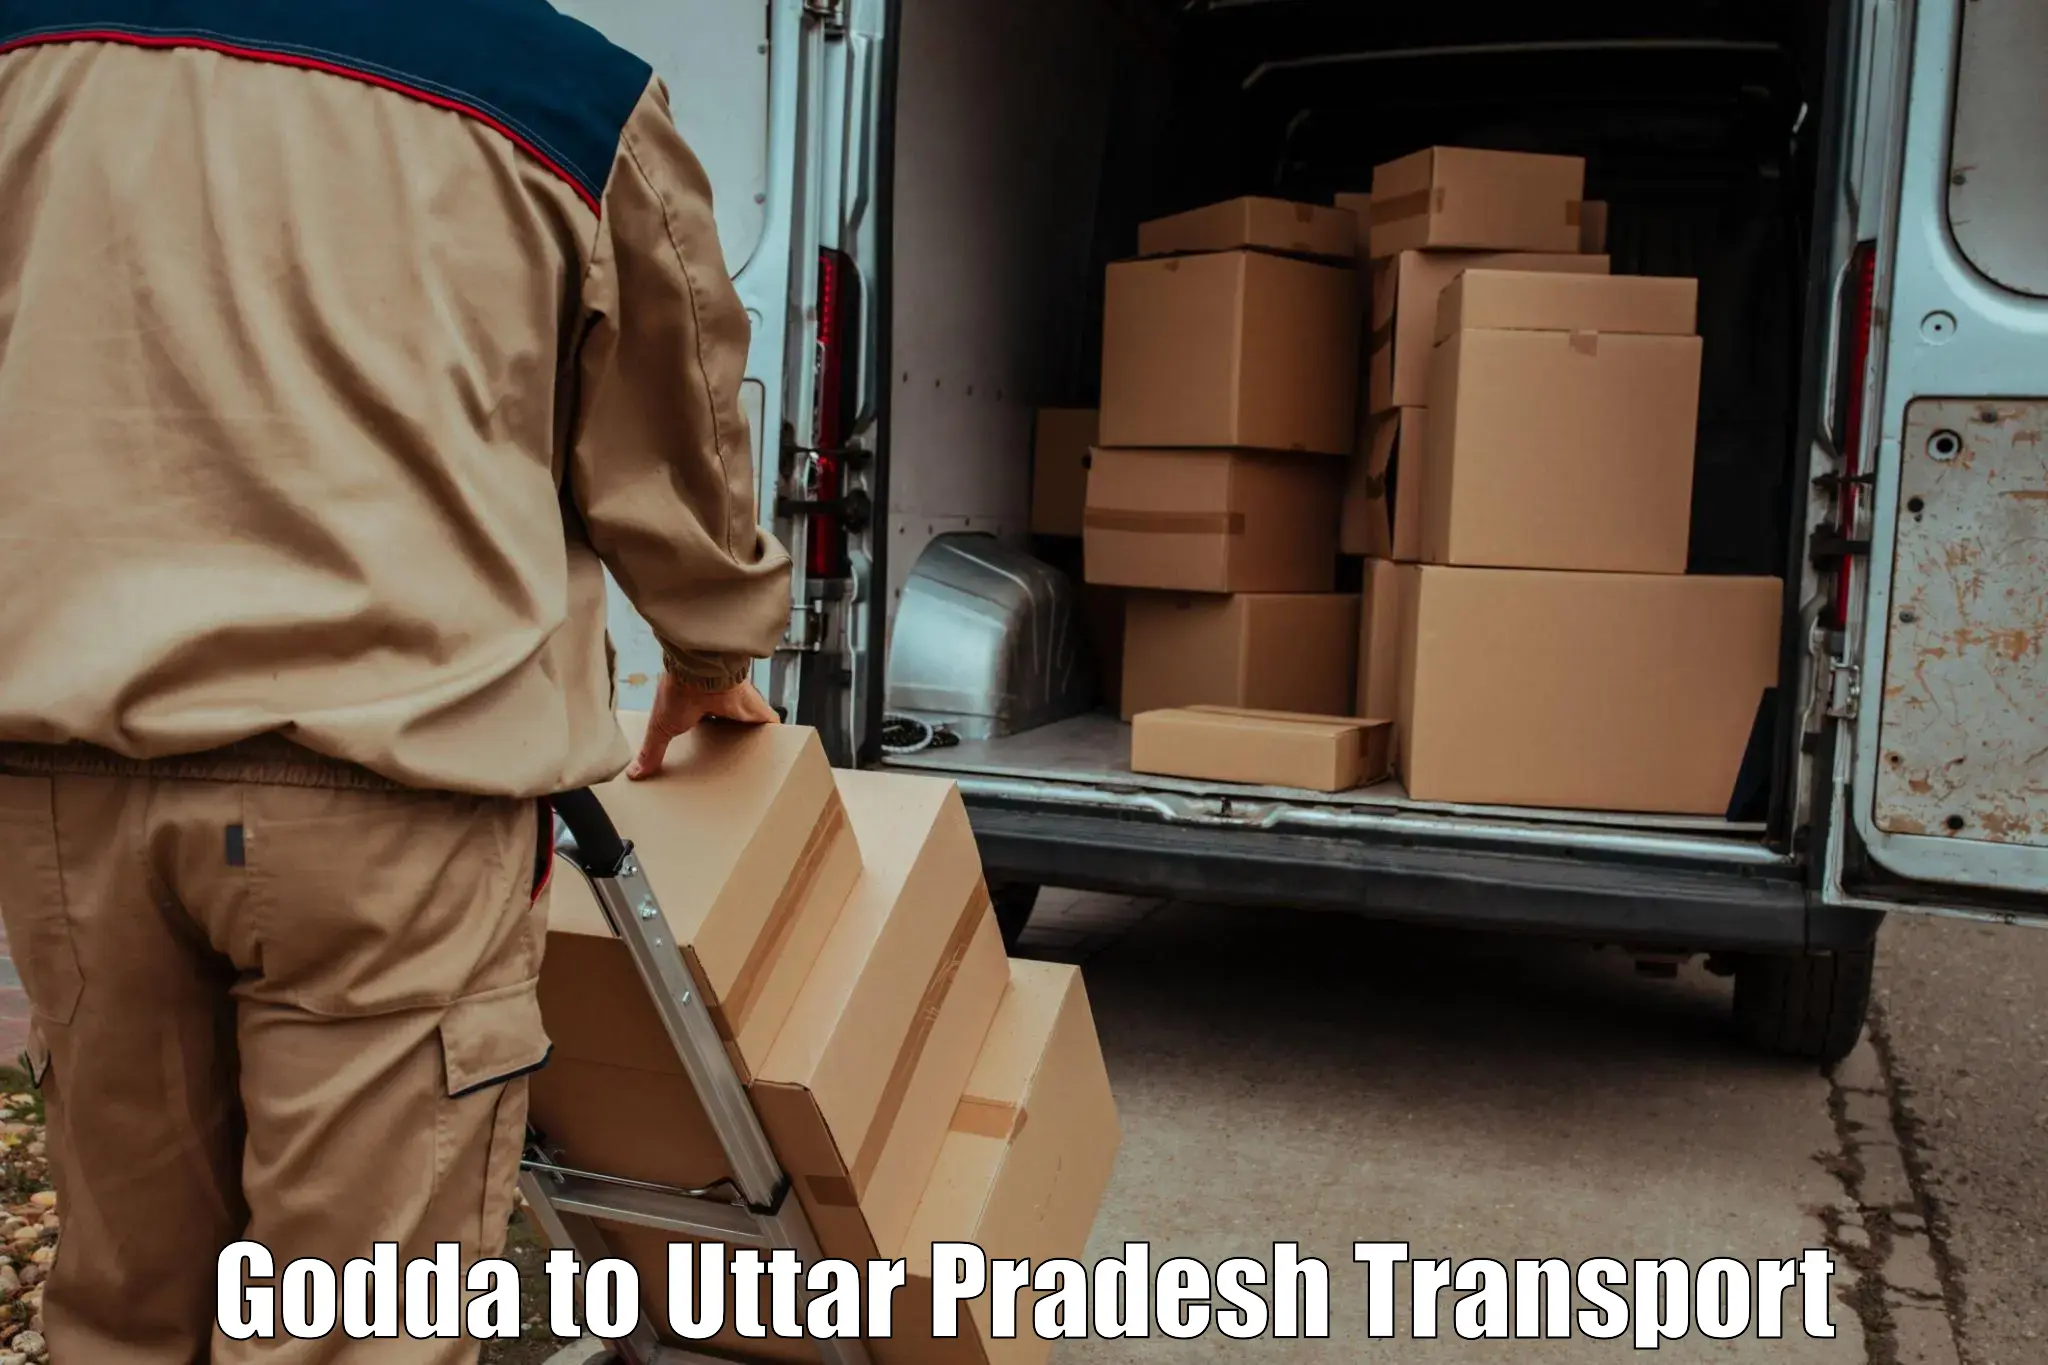 Nearest transport service Godda to Salemgarh